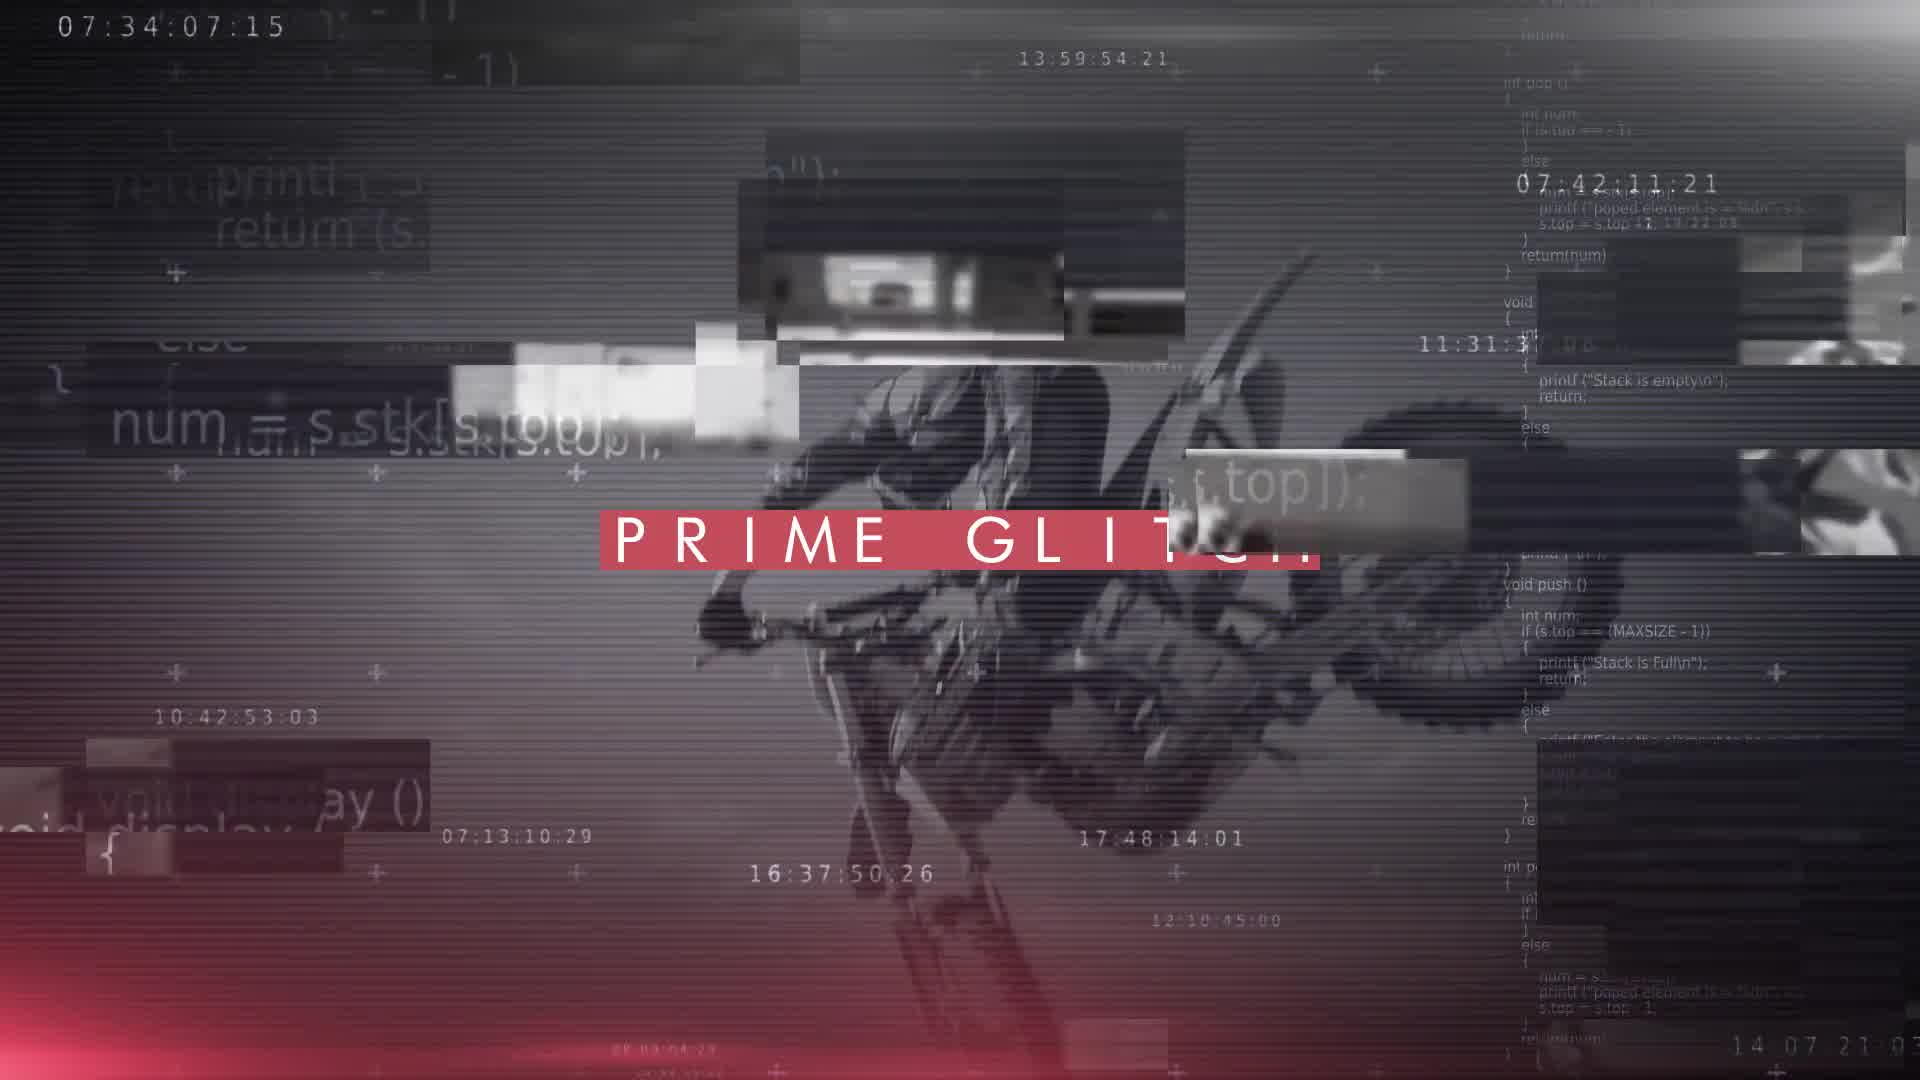 Prime Glitch Intro Premiere Pro Videohive 27010886 Premiere Pro Image 9